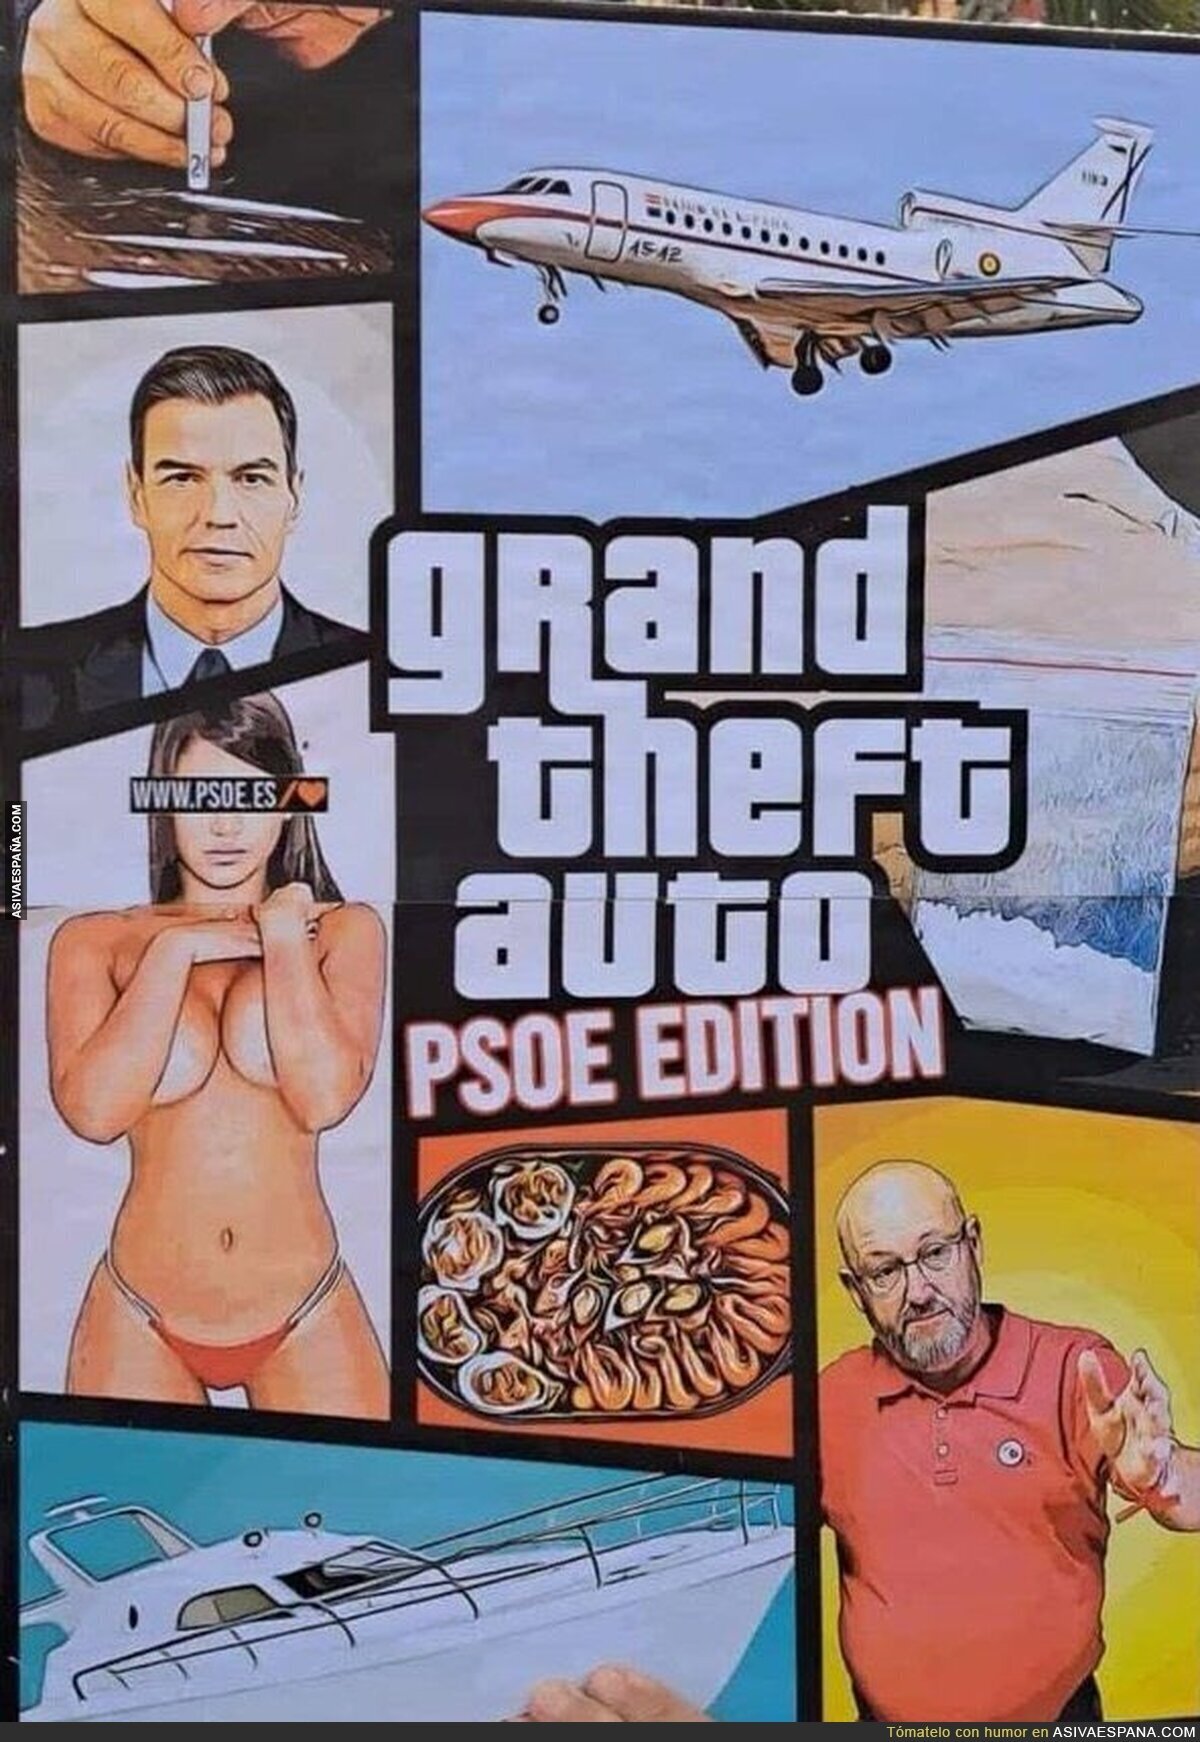 GTA: PSOE edition